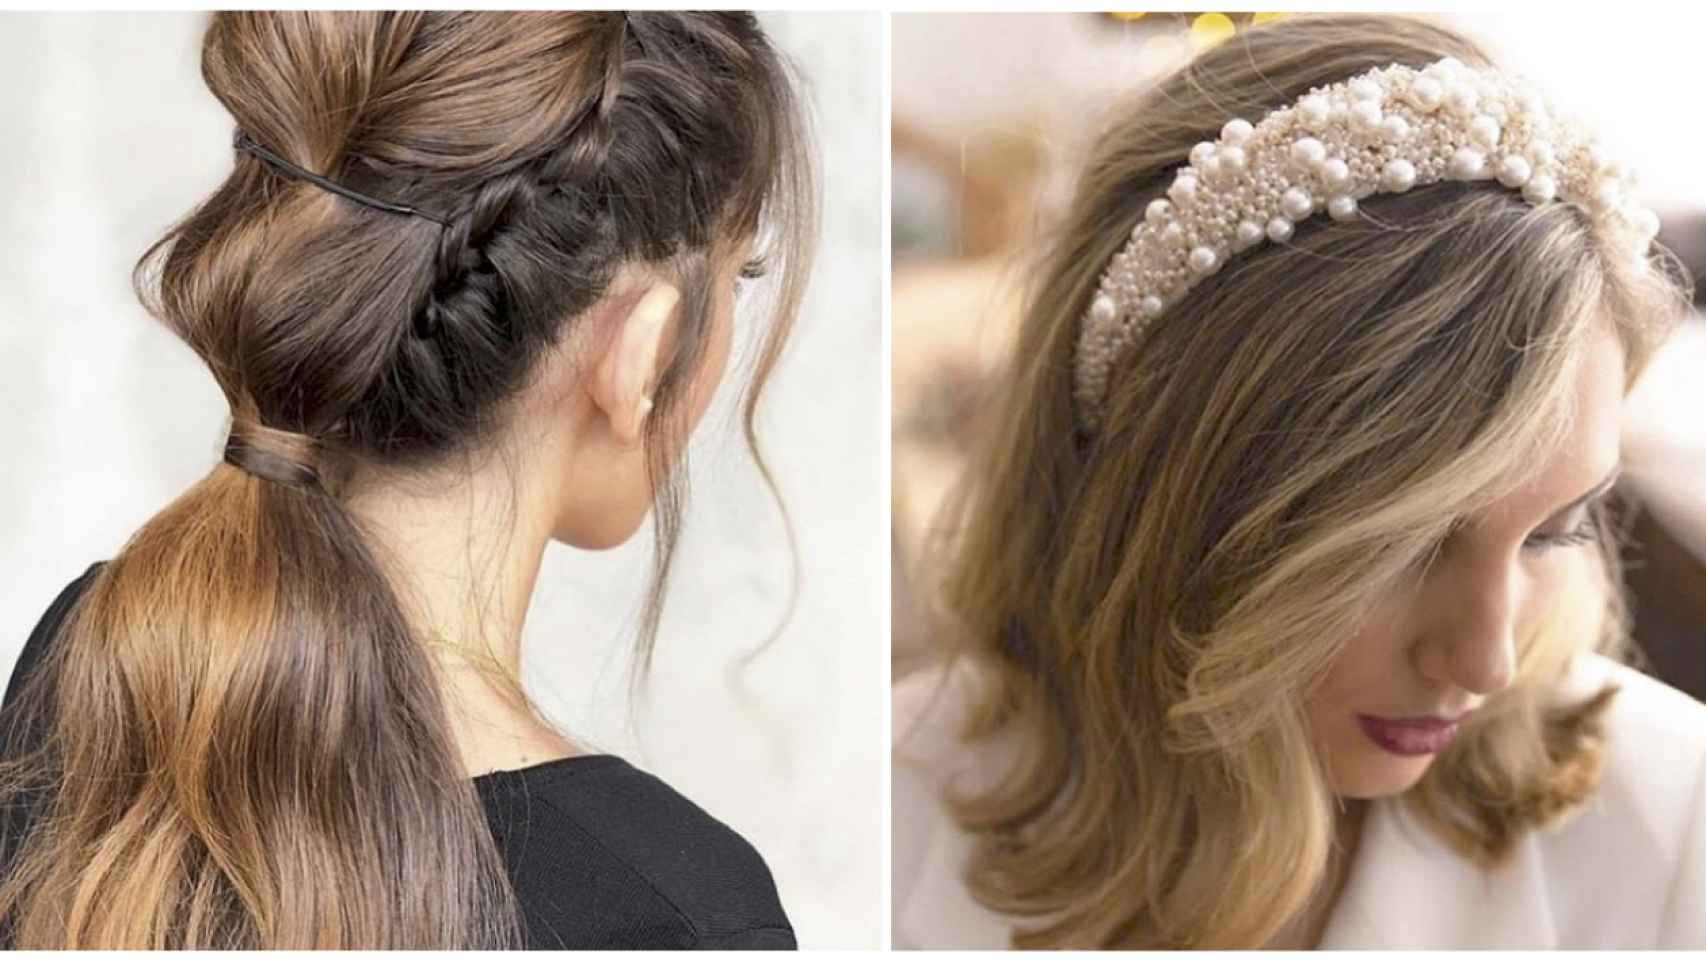 Ideas de peinados para las invitadas a la boda acorde a las tendencias.